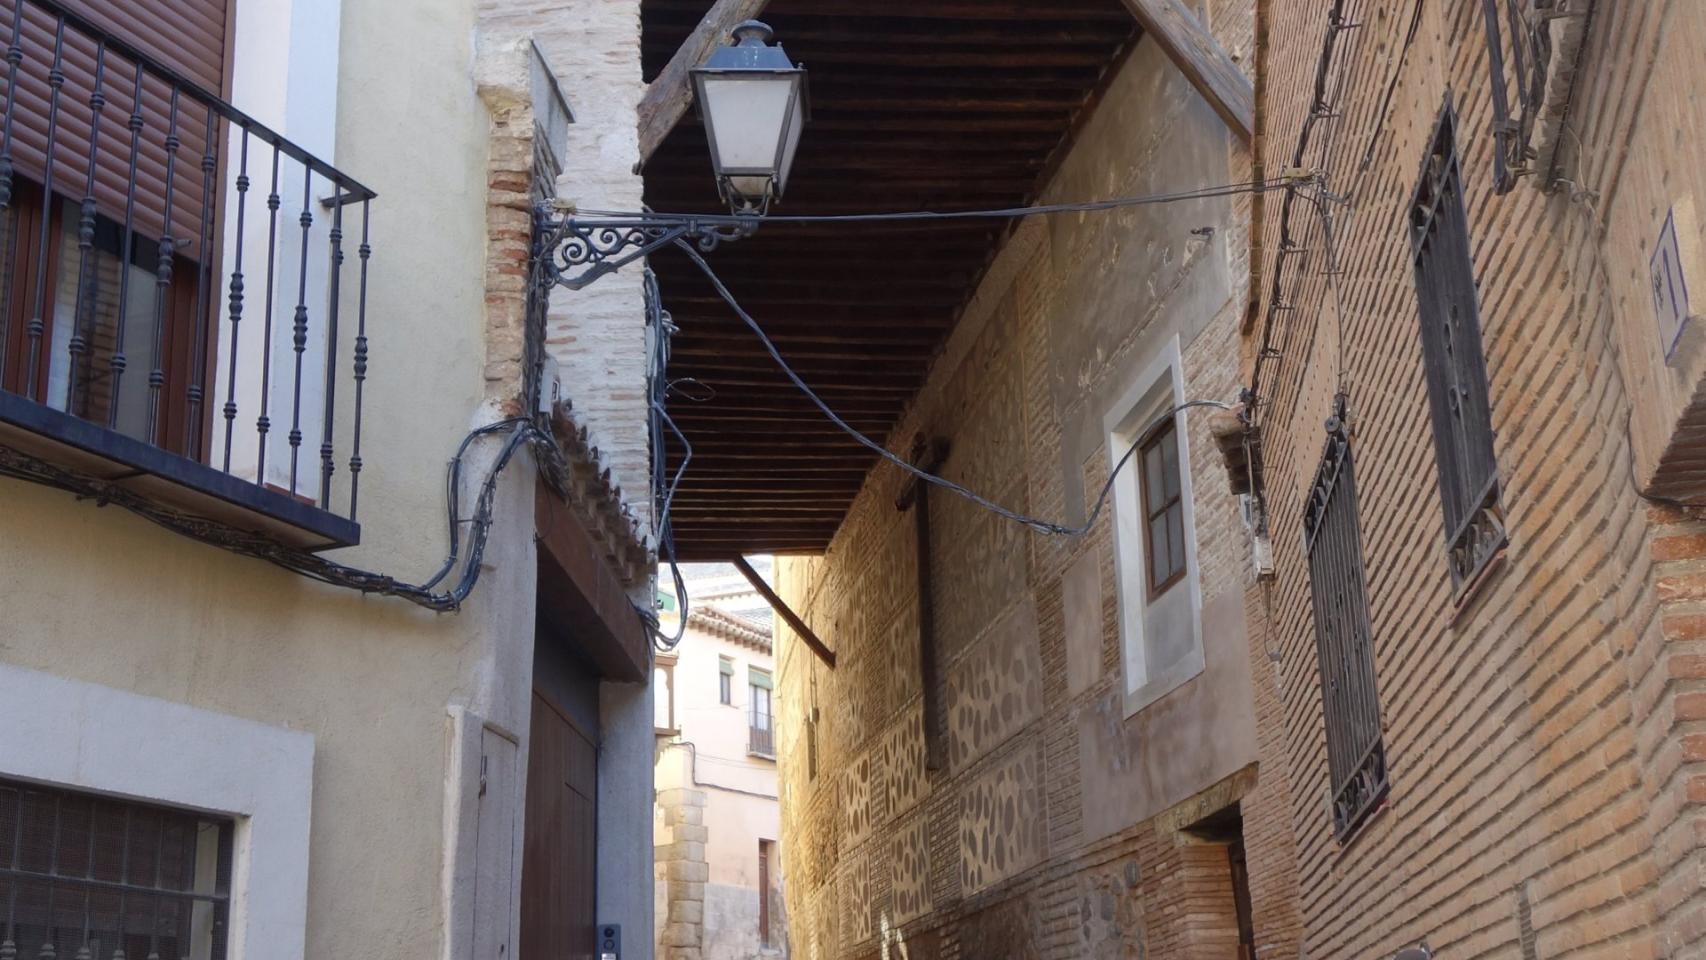 Vuelven a abrir el cobertizo de Doncellas en Toledo tras su restauración